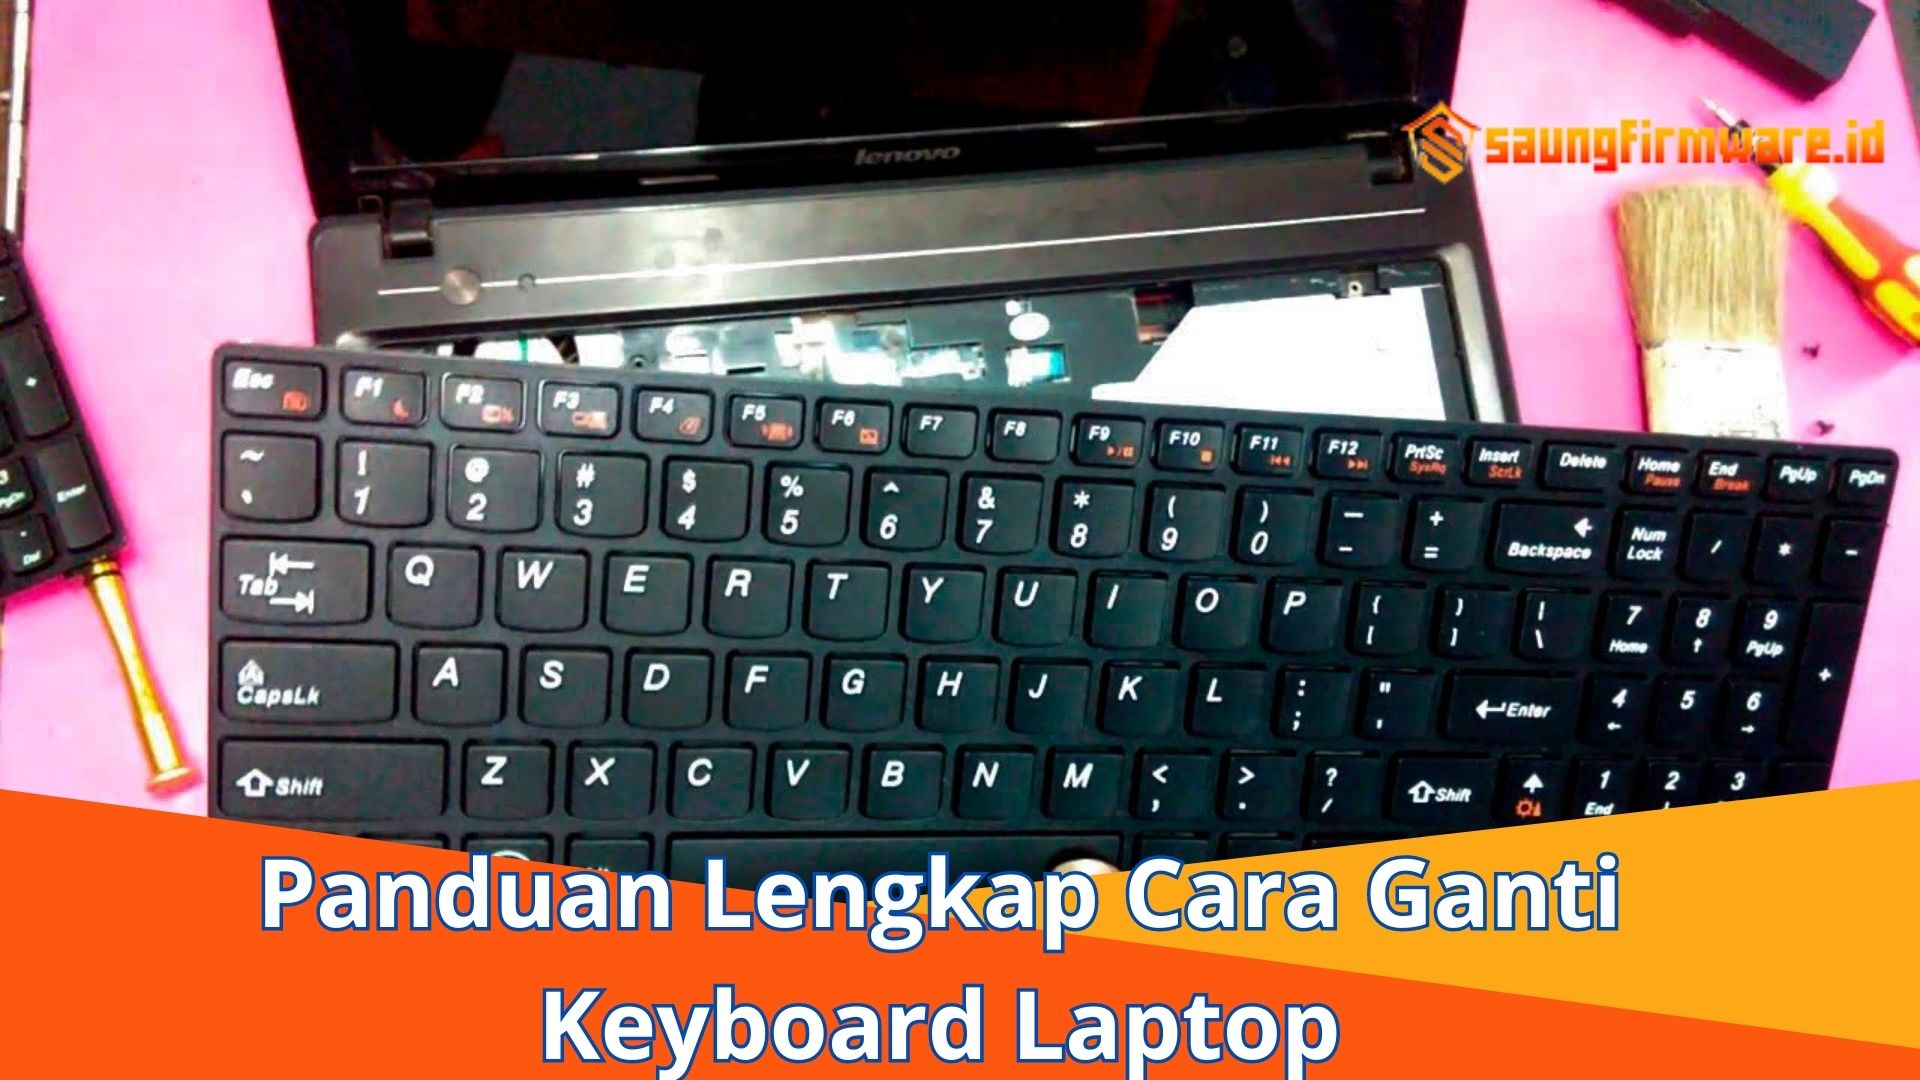 Panduan Lengkap Cara Ganti Keyboard Laptop